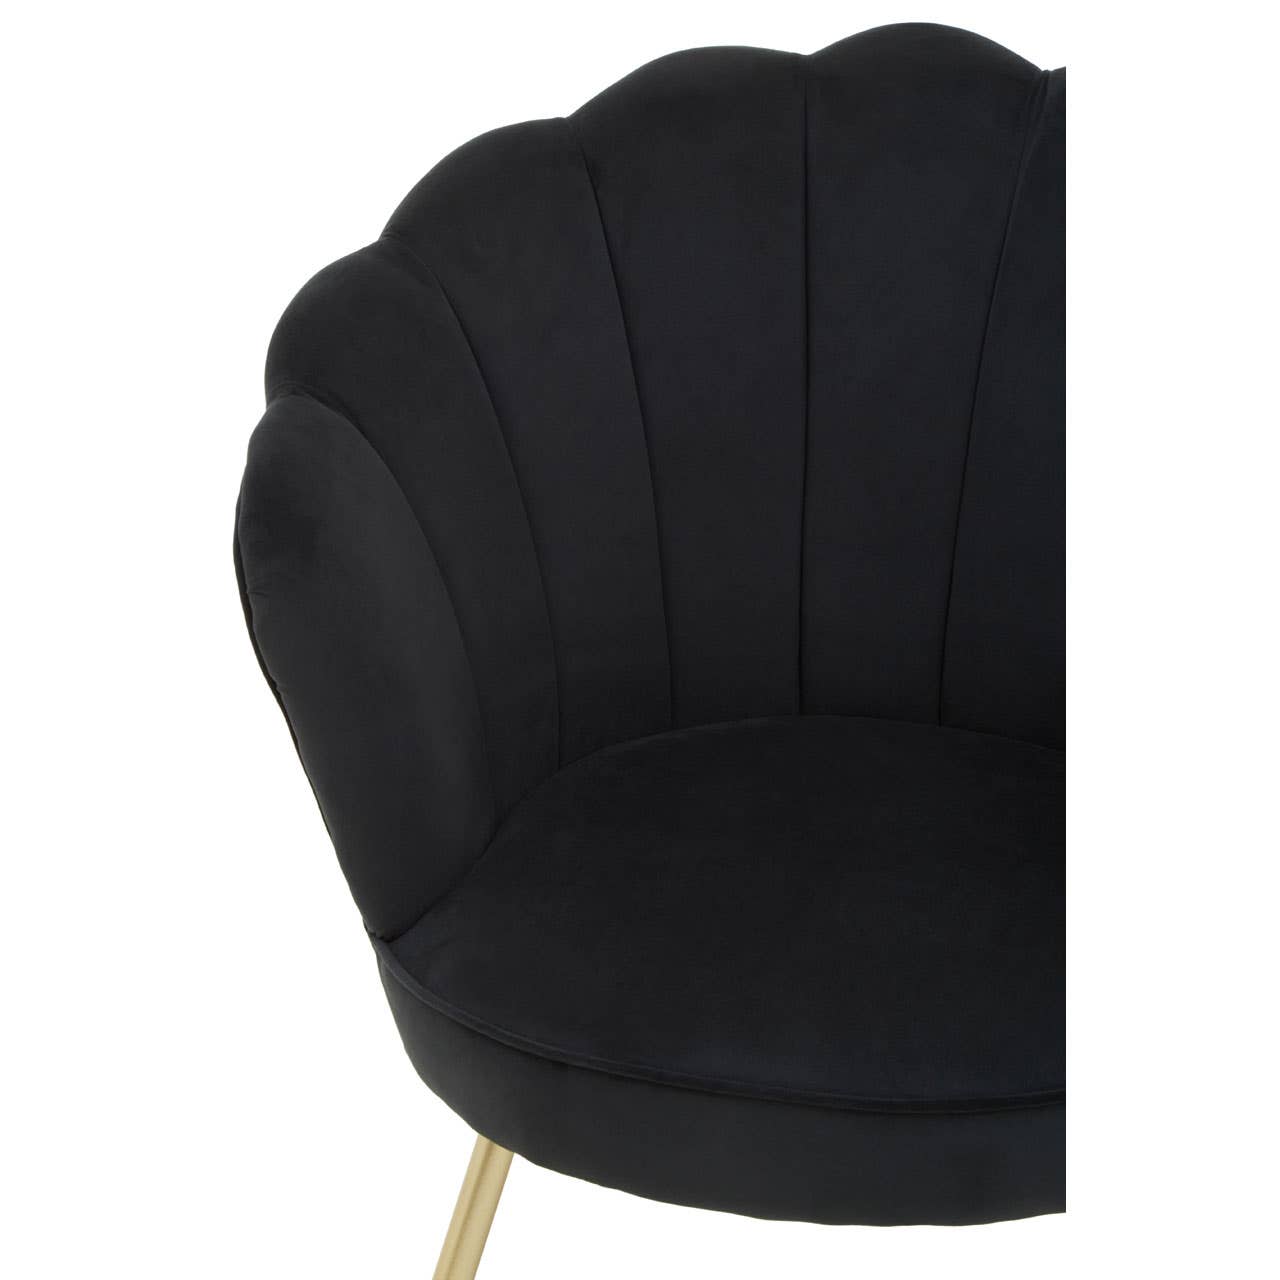 Noosa & Co. Living Ovala Black Velvet Scalloped Chair House of Isabella UK